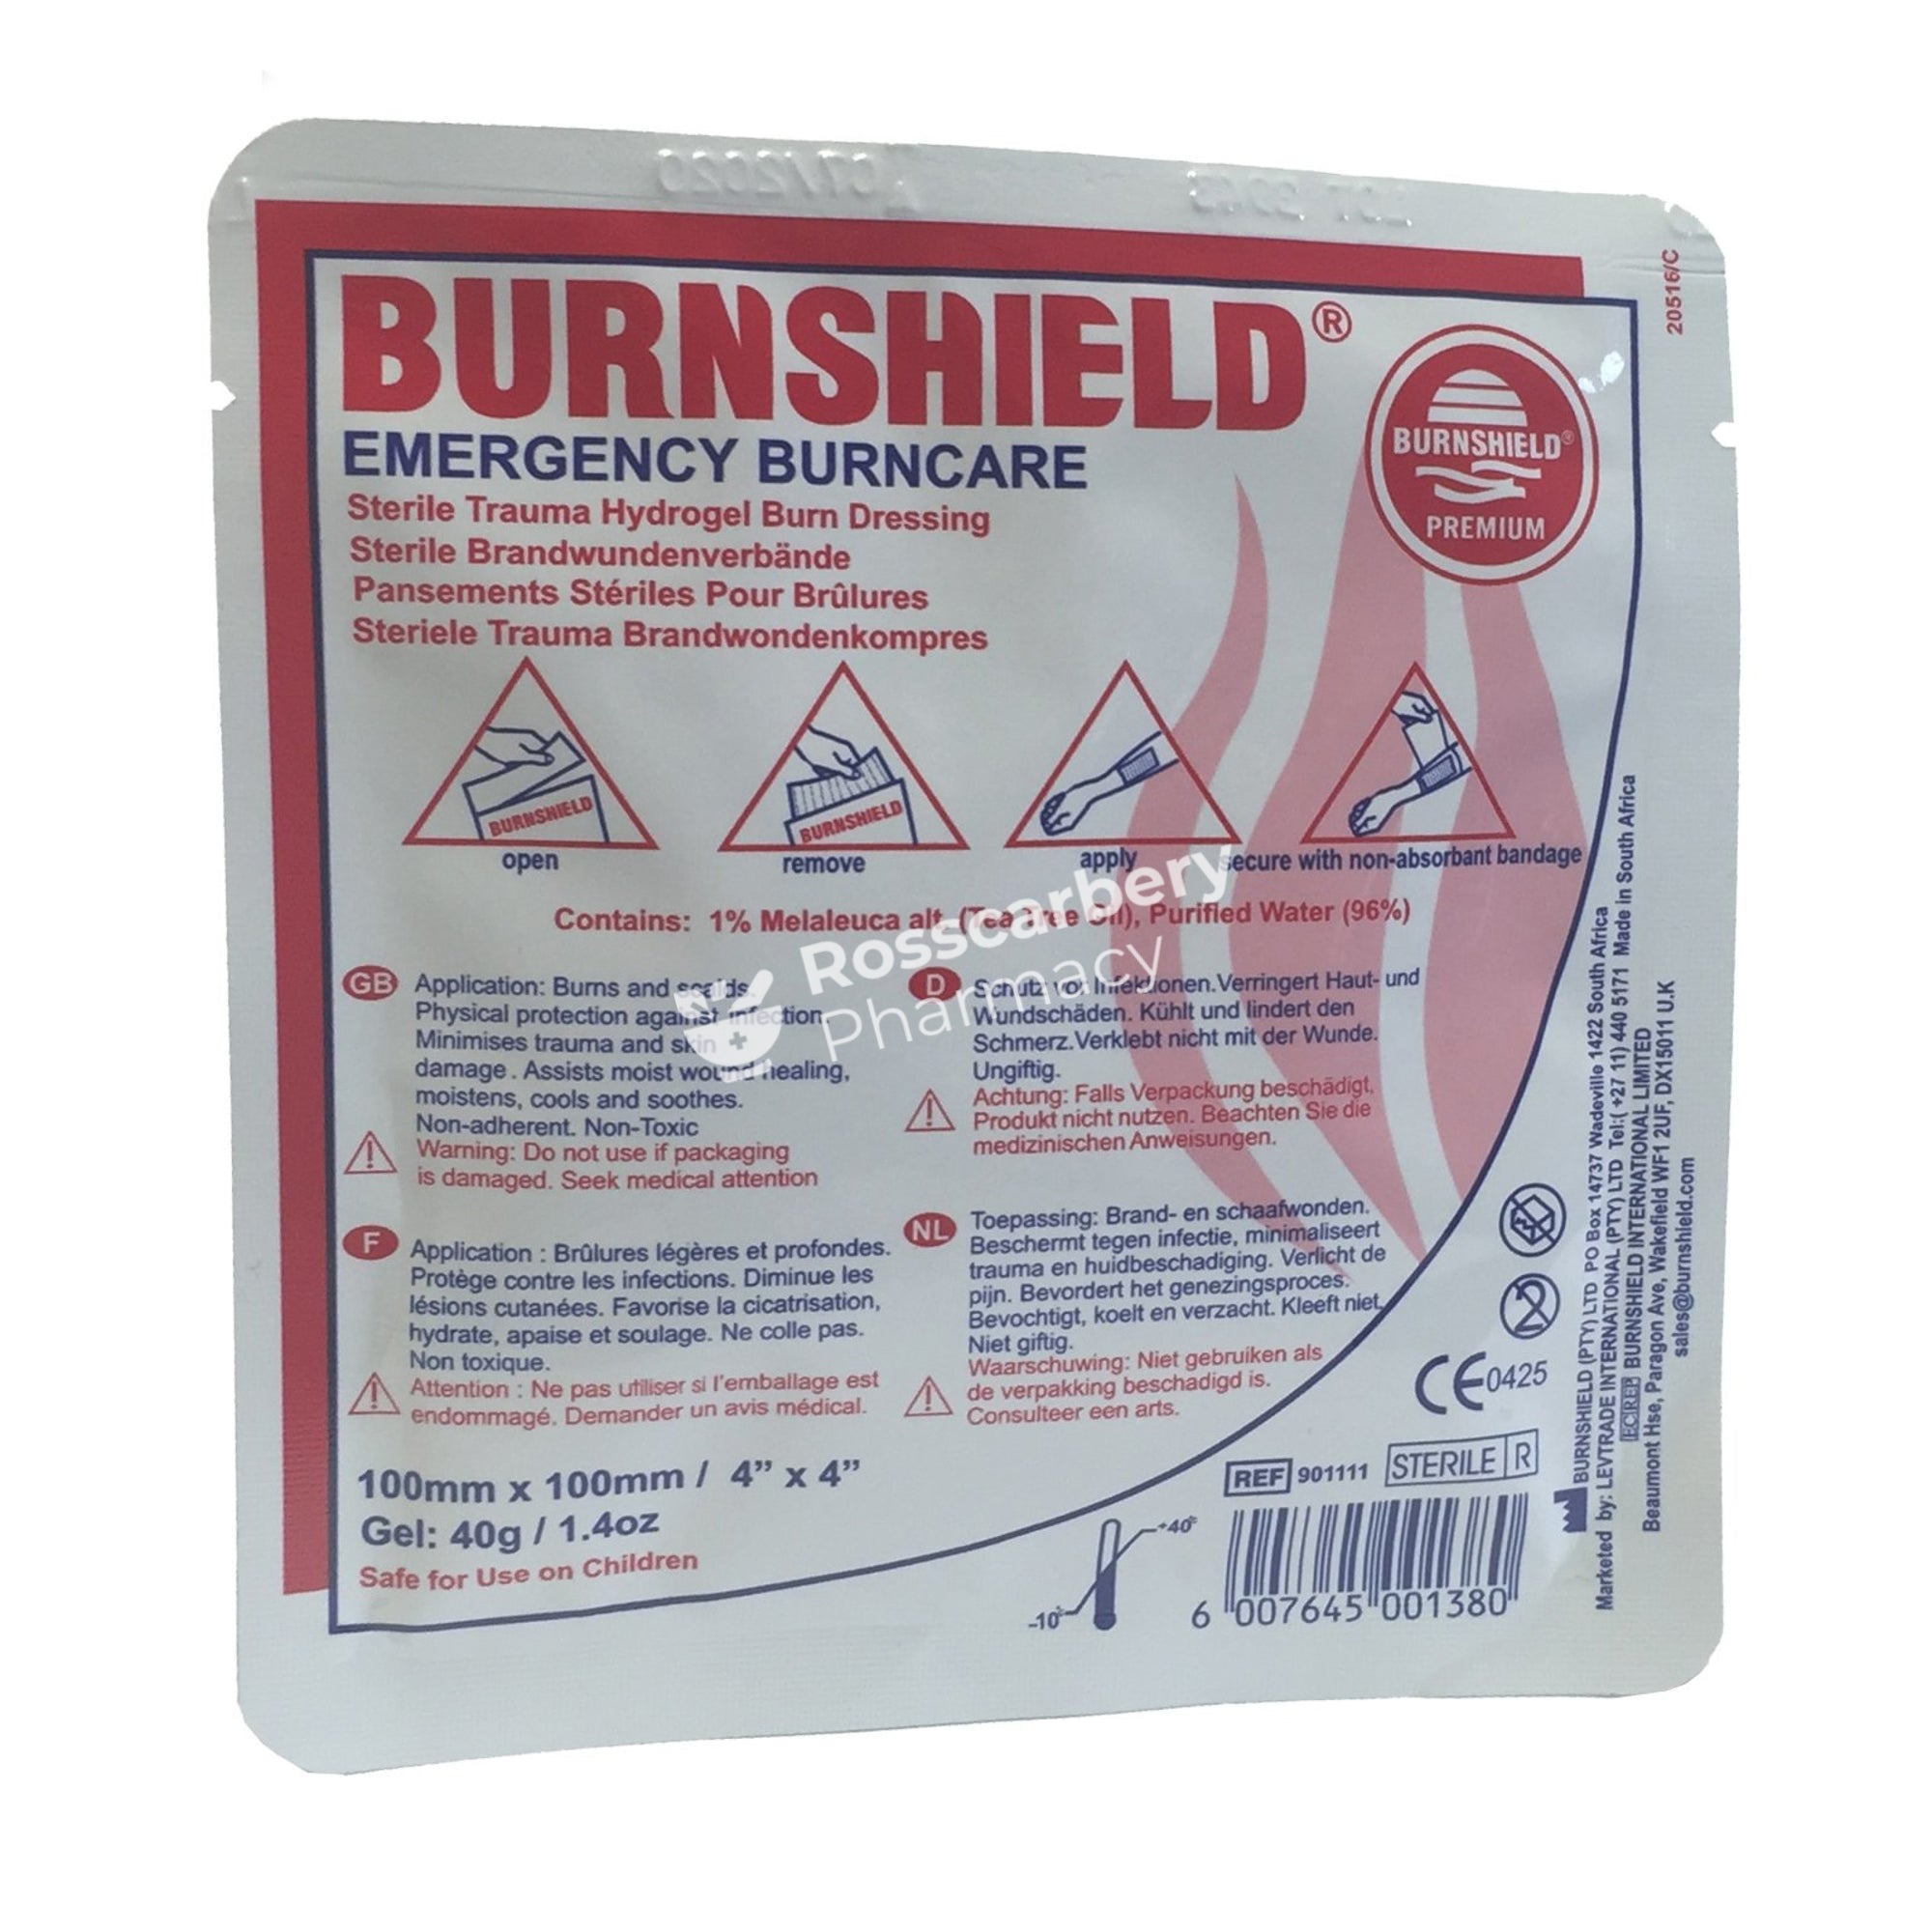 Burnshield Emergency Burncare Sterile Trauma Hydrogel Burn Dressing 4X4 Burns